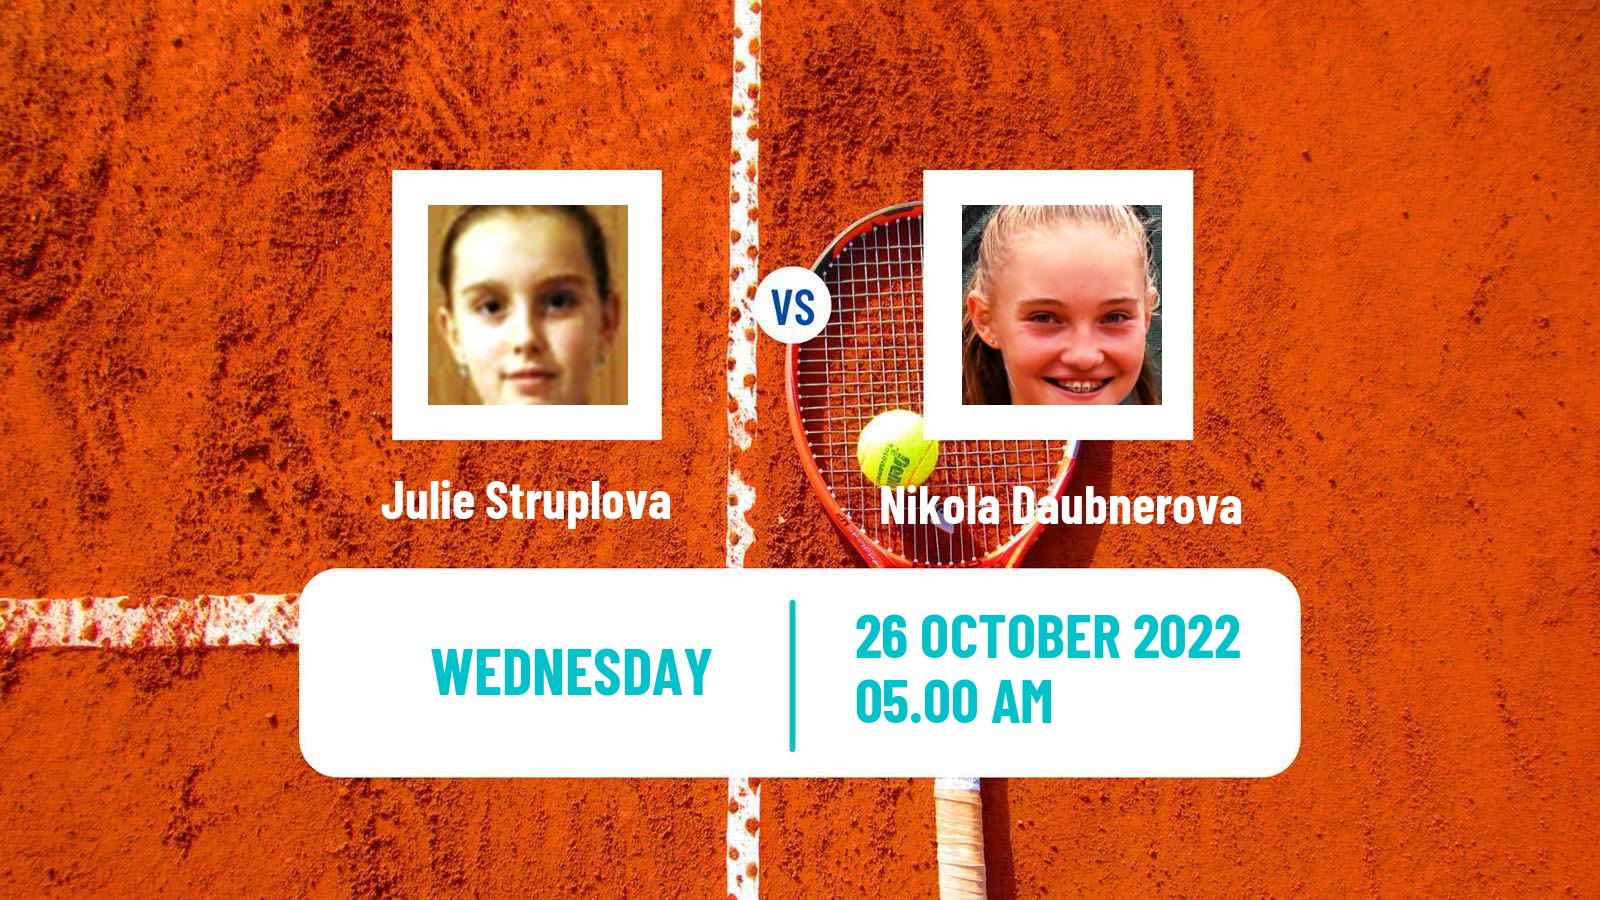 Tennis ITF Tournaments Julie Struplova - Nikola Daubnerova